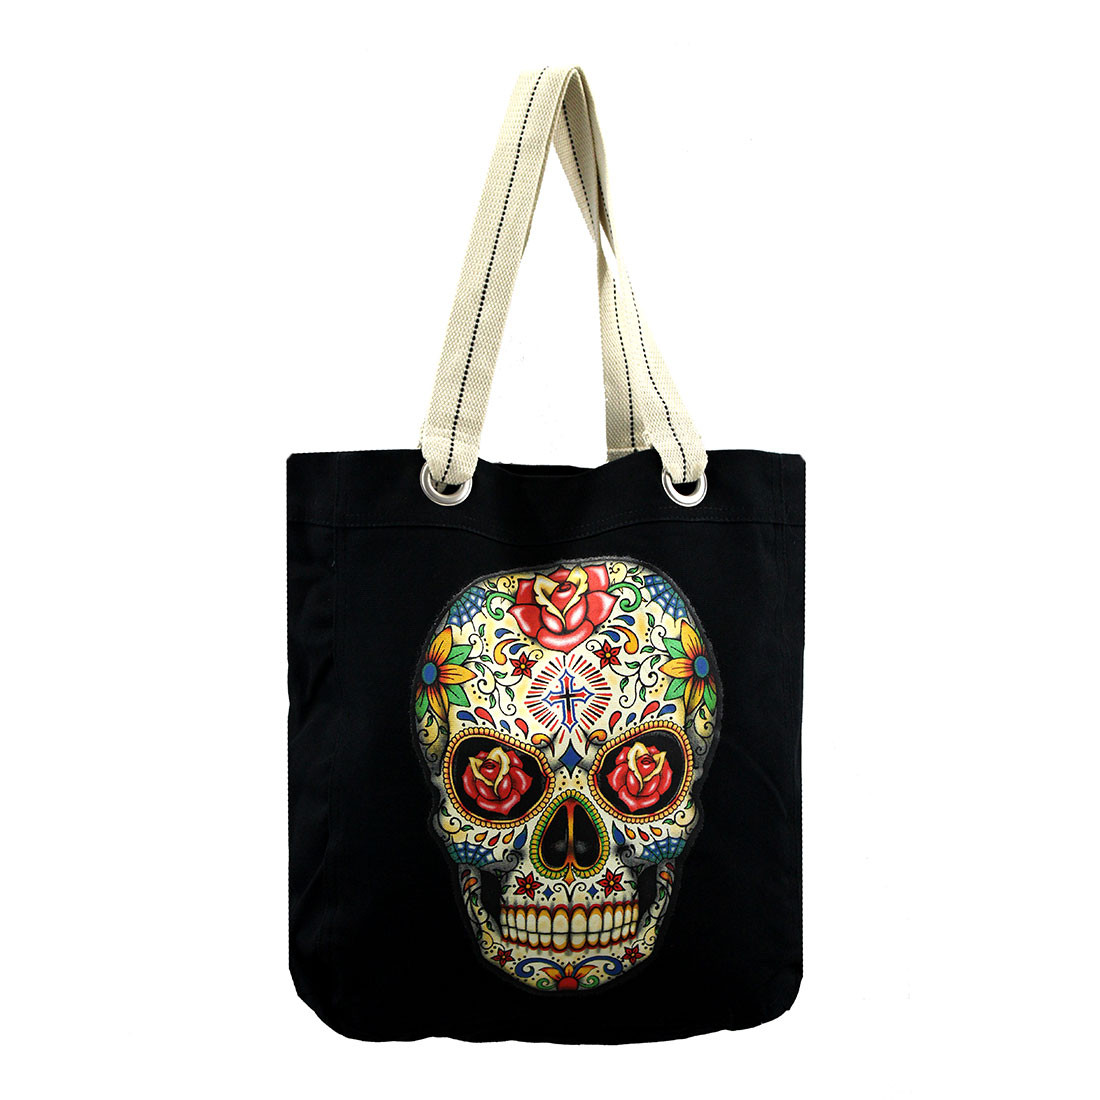 Colorful sugar skull tote bag